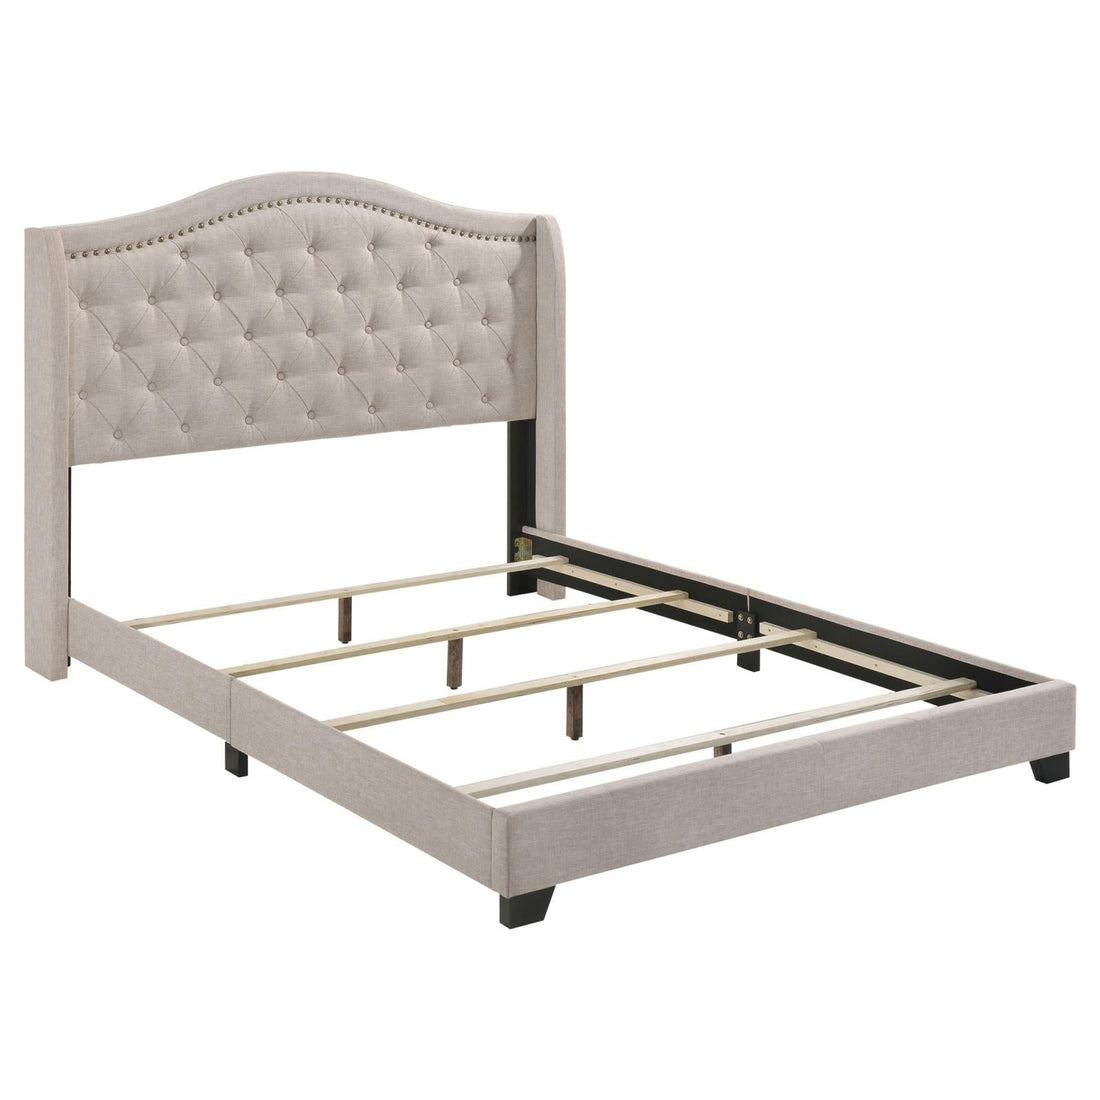 Sonoma Camel Back Full Bed Beige - 310073F - Bien Home Furniture &amp; Electronics